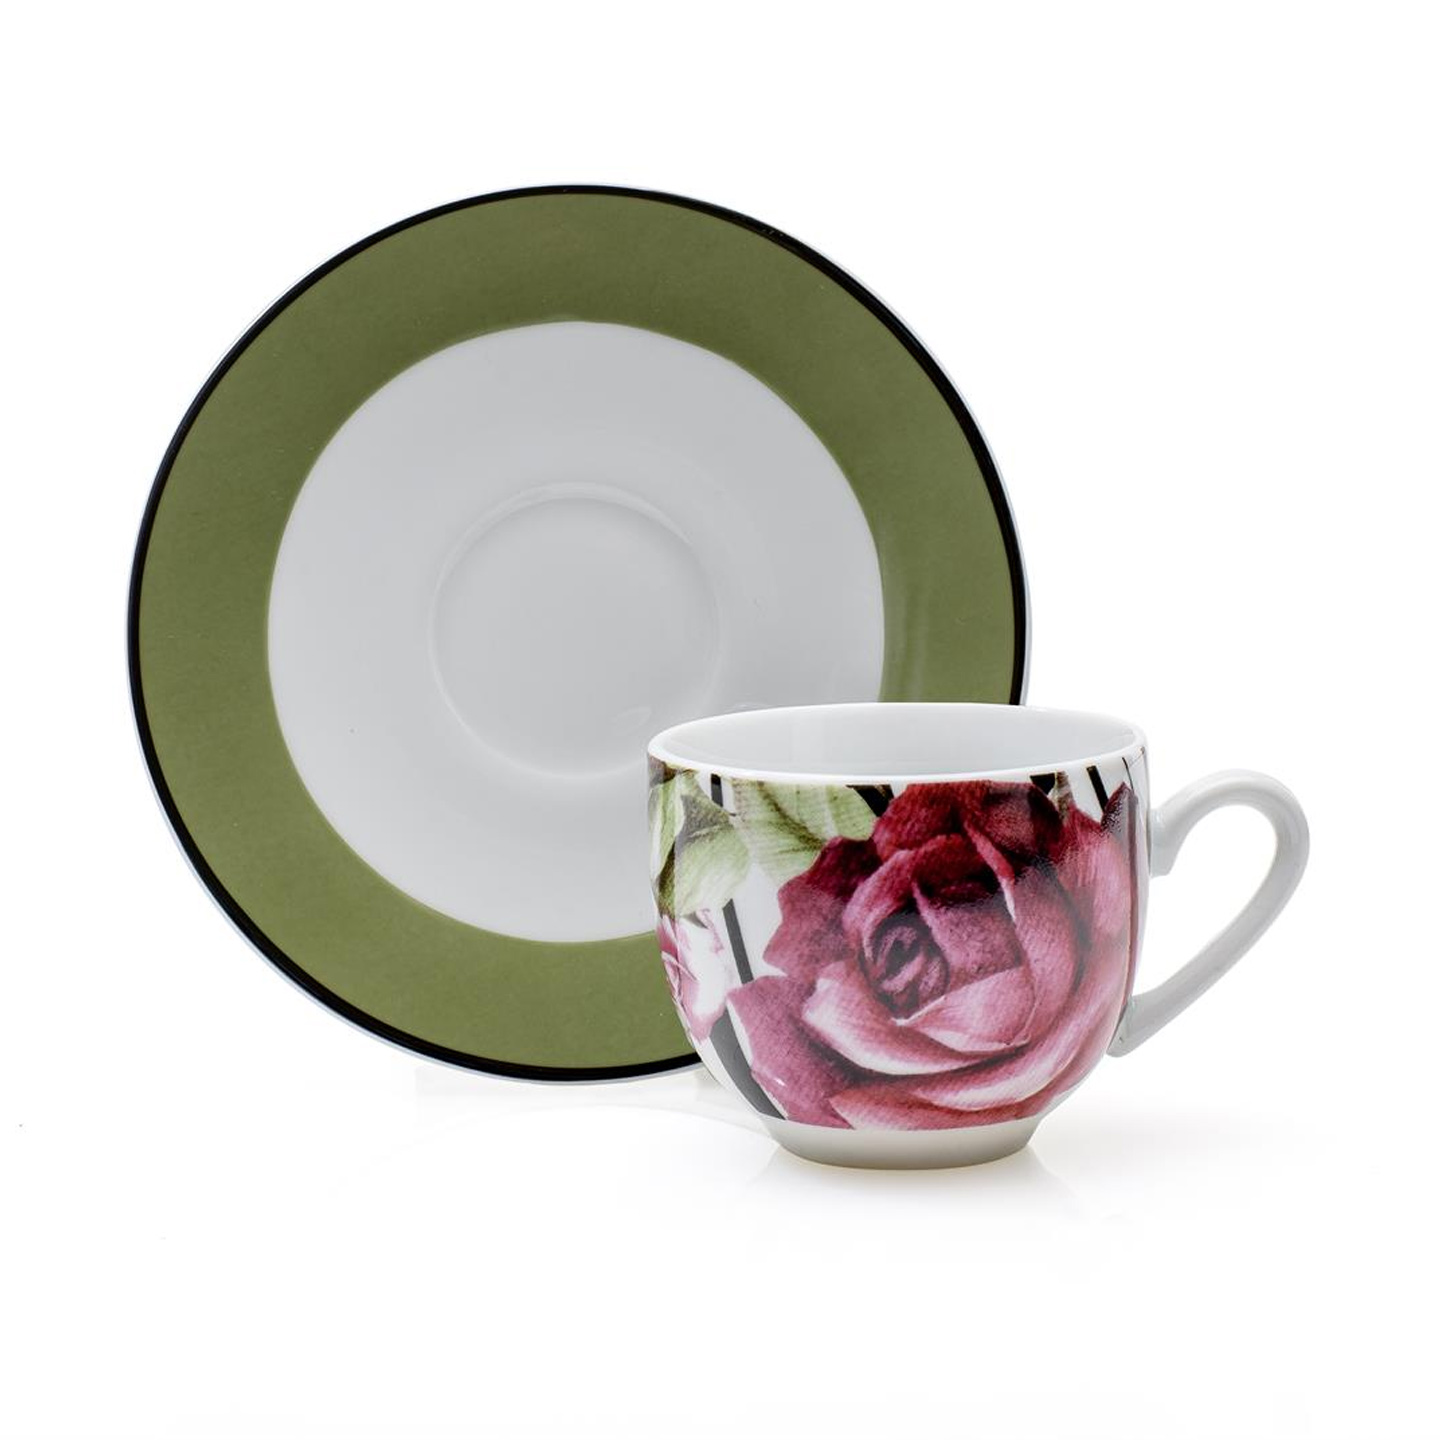 Servizio da caffè in porcellana decorata con motivi floreali set da 4 tazzine per tè e caffè in porcellana con piattini idea regalo 